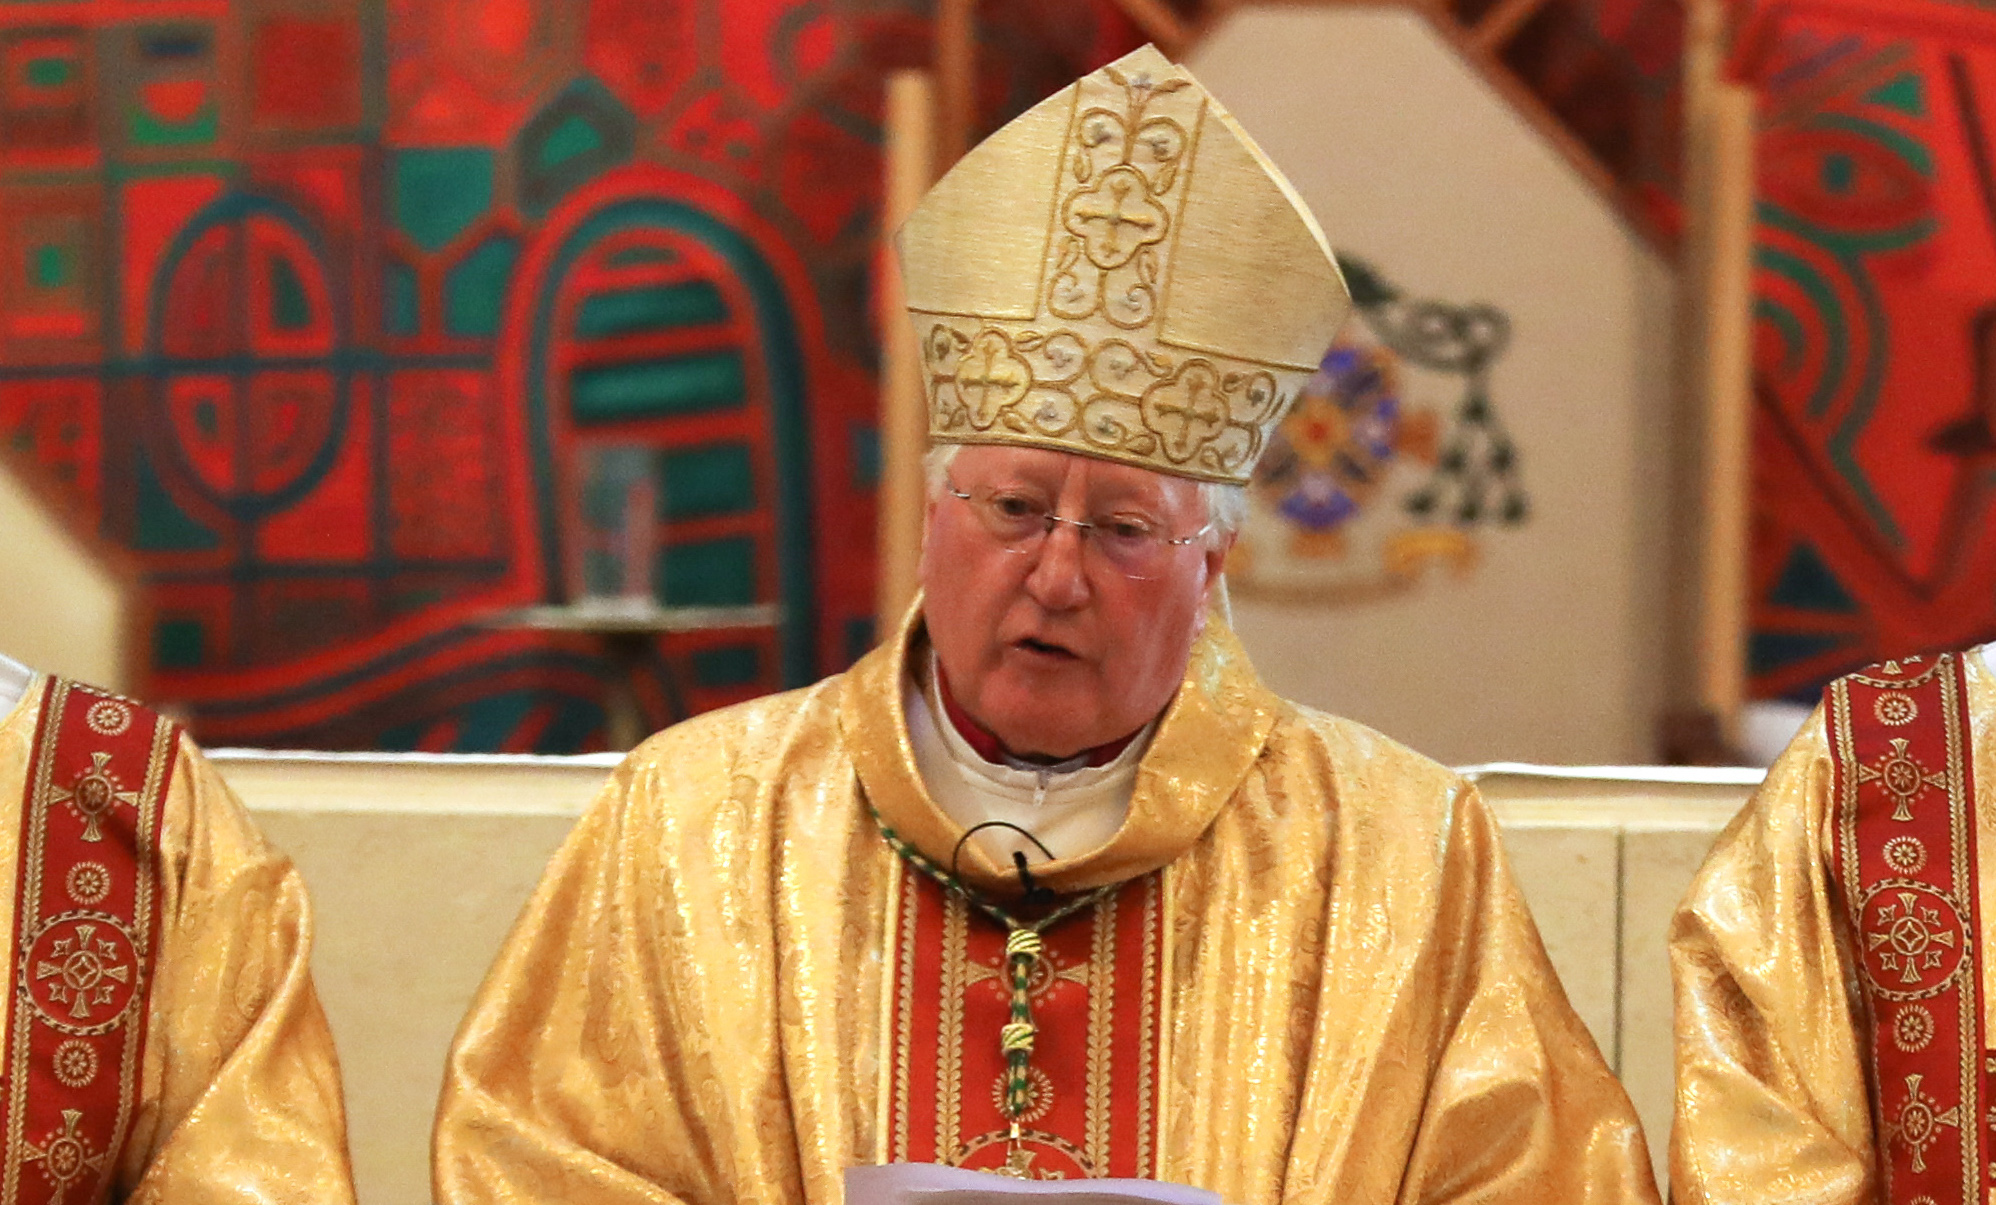 Bishop To Celebrate Special Masses In November